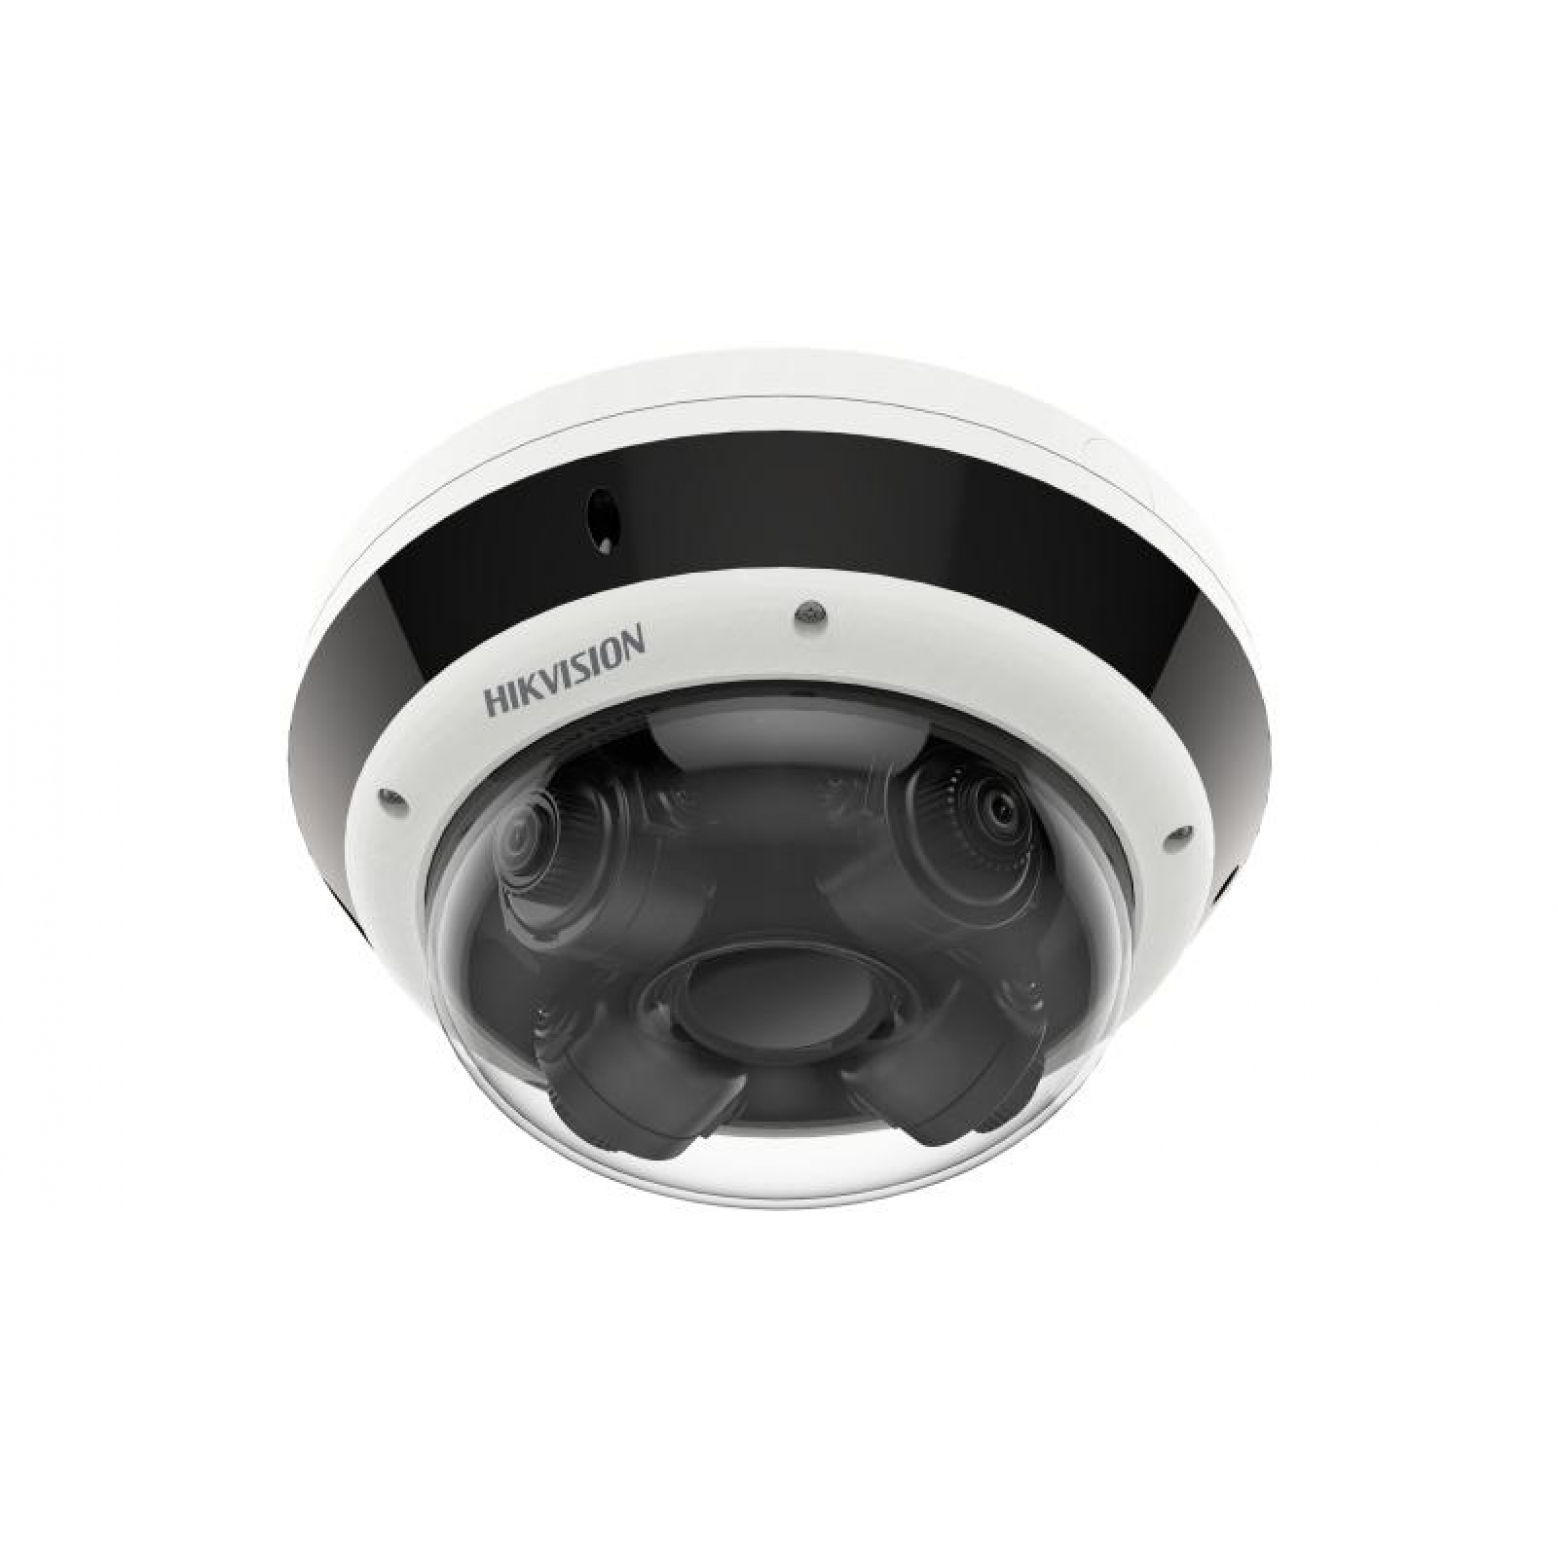 Hikvision DS-2CD6D44G1H-IZS - PanoVu - Panoramic - Fish Eye - MultiSensor - 4MP - 2.8-12mm Varifocal Lens - IP